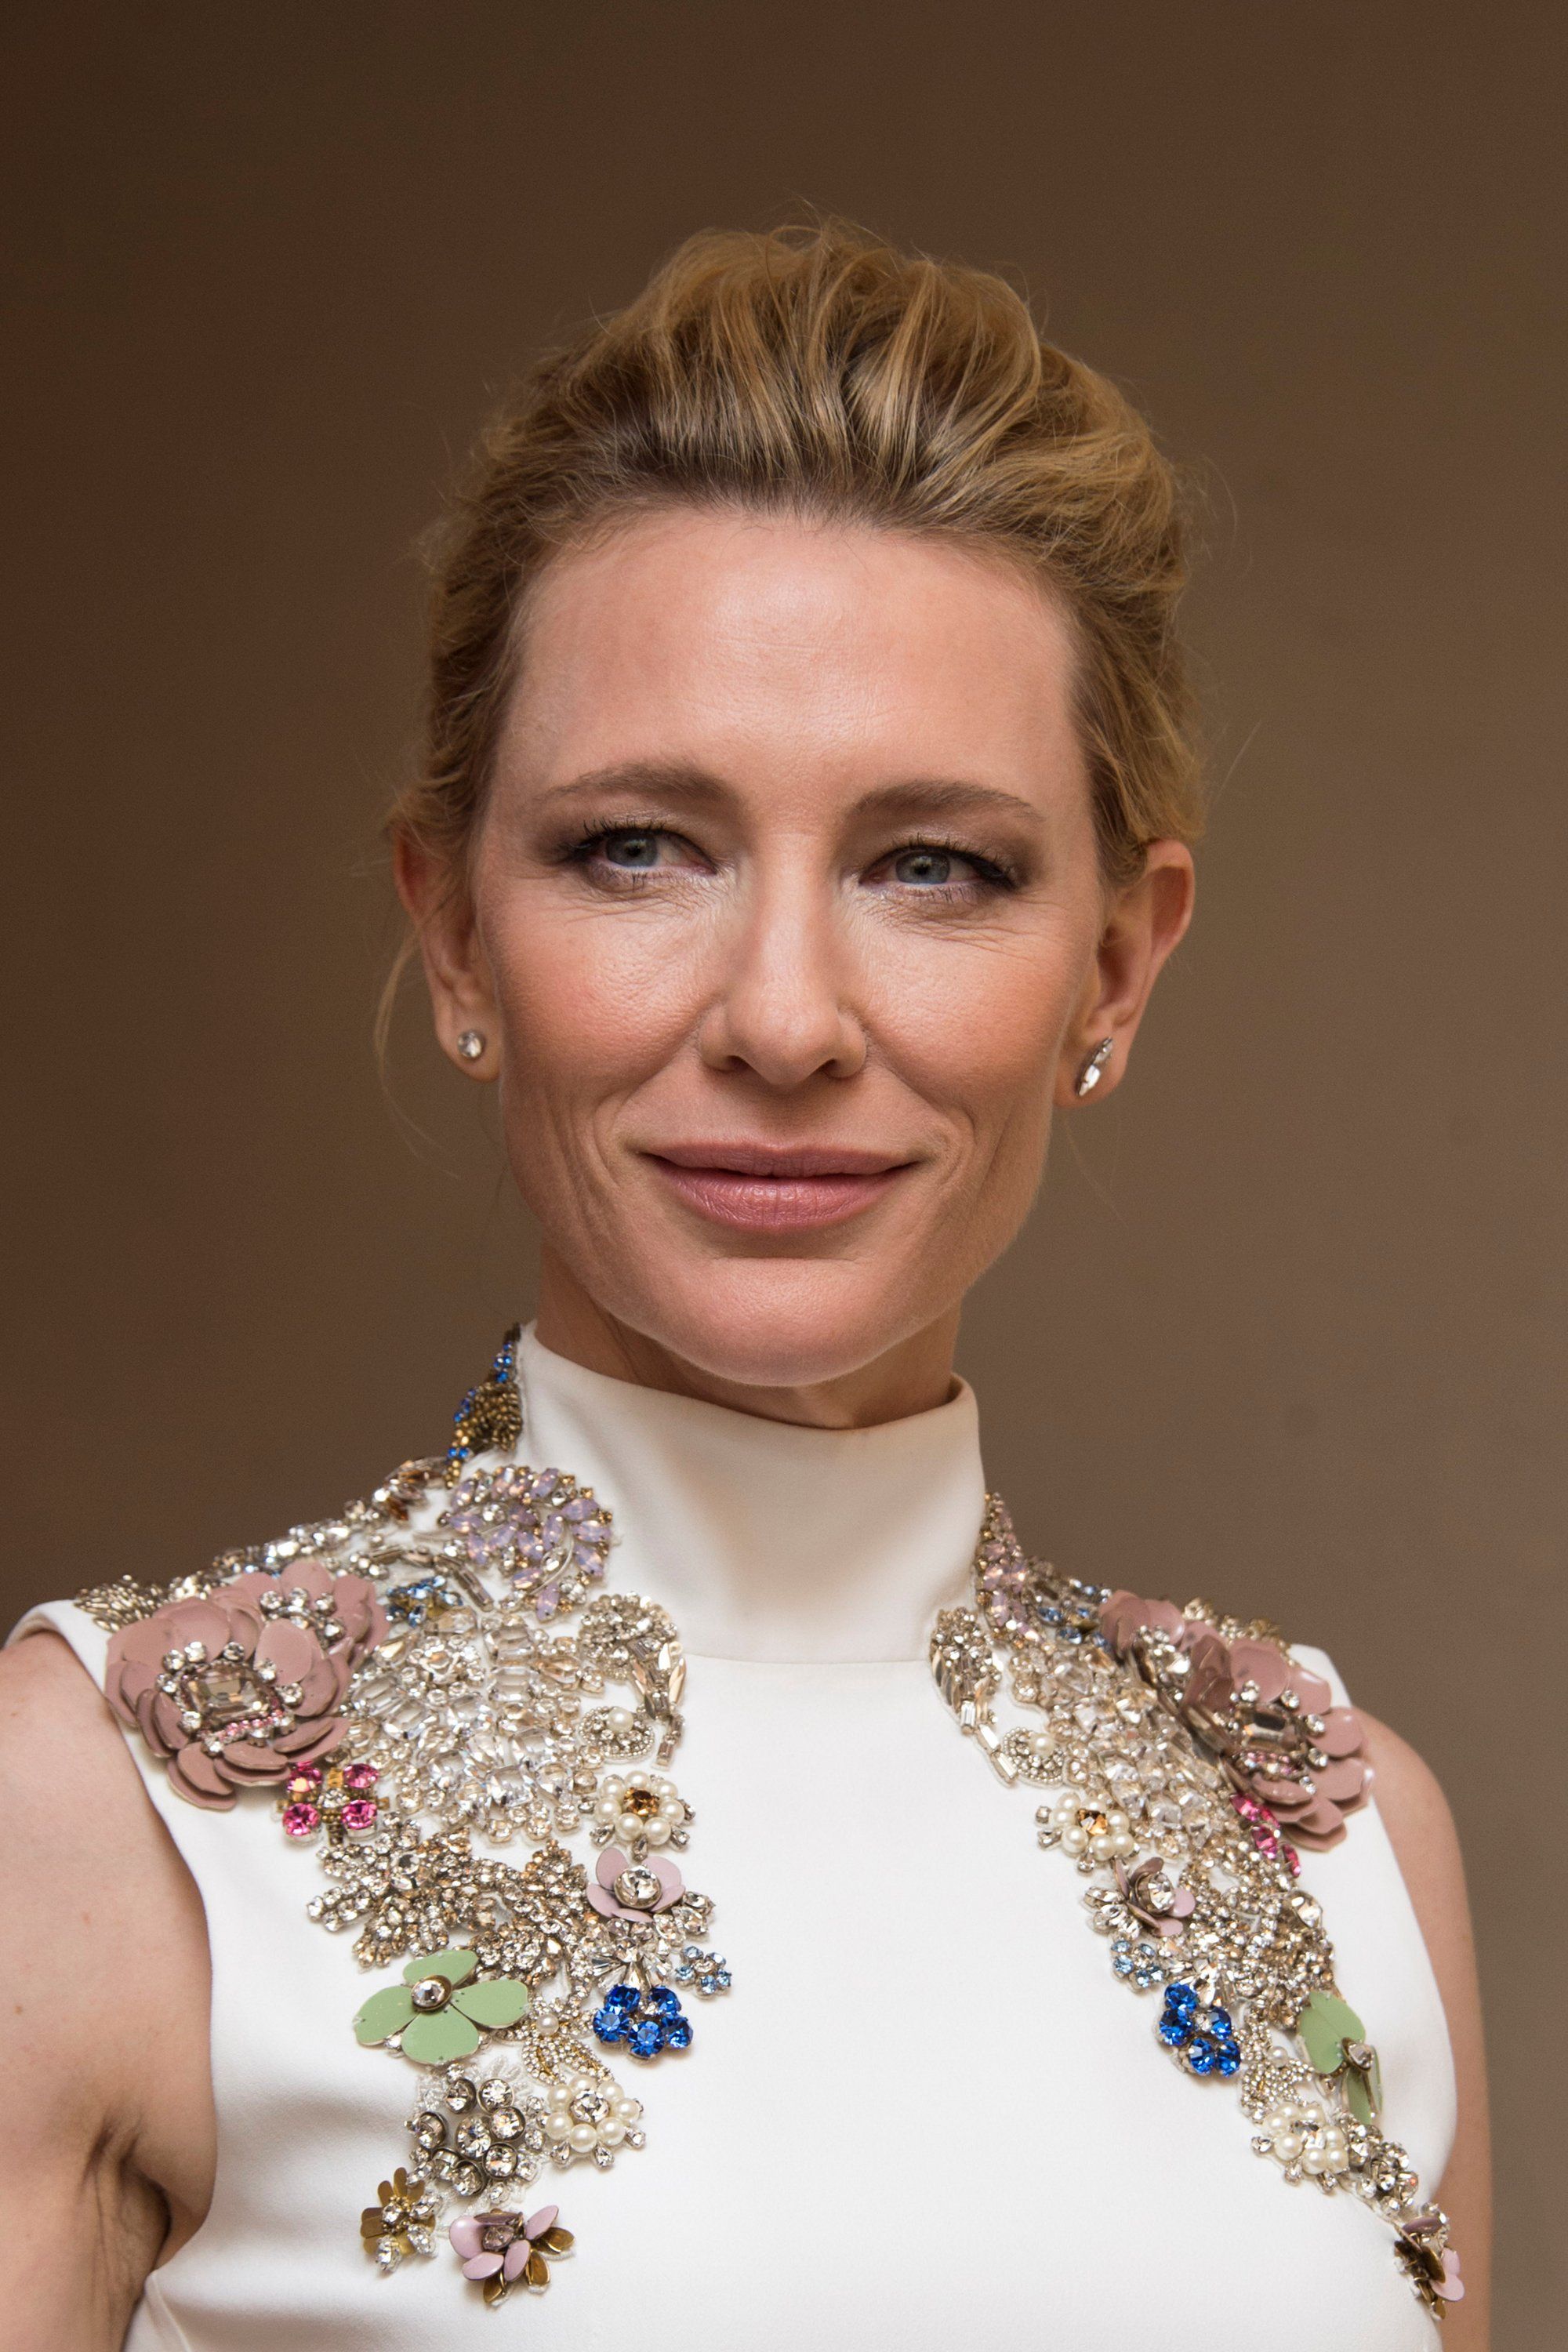 Bfi London Film Awards Inside October 17th 2015 237 Cate Blanchett Fan Cate Blanchett